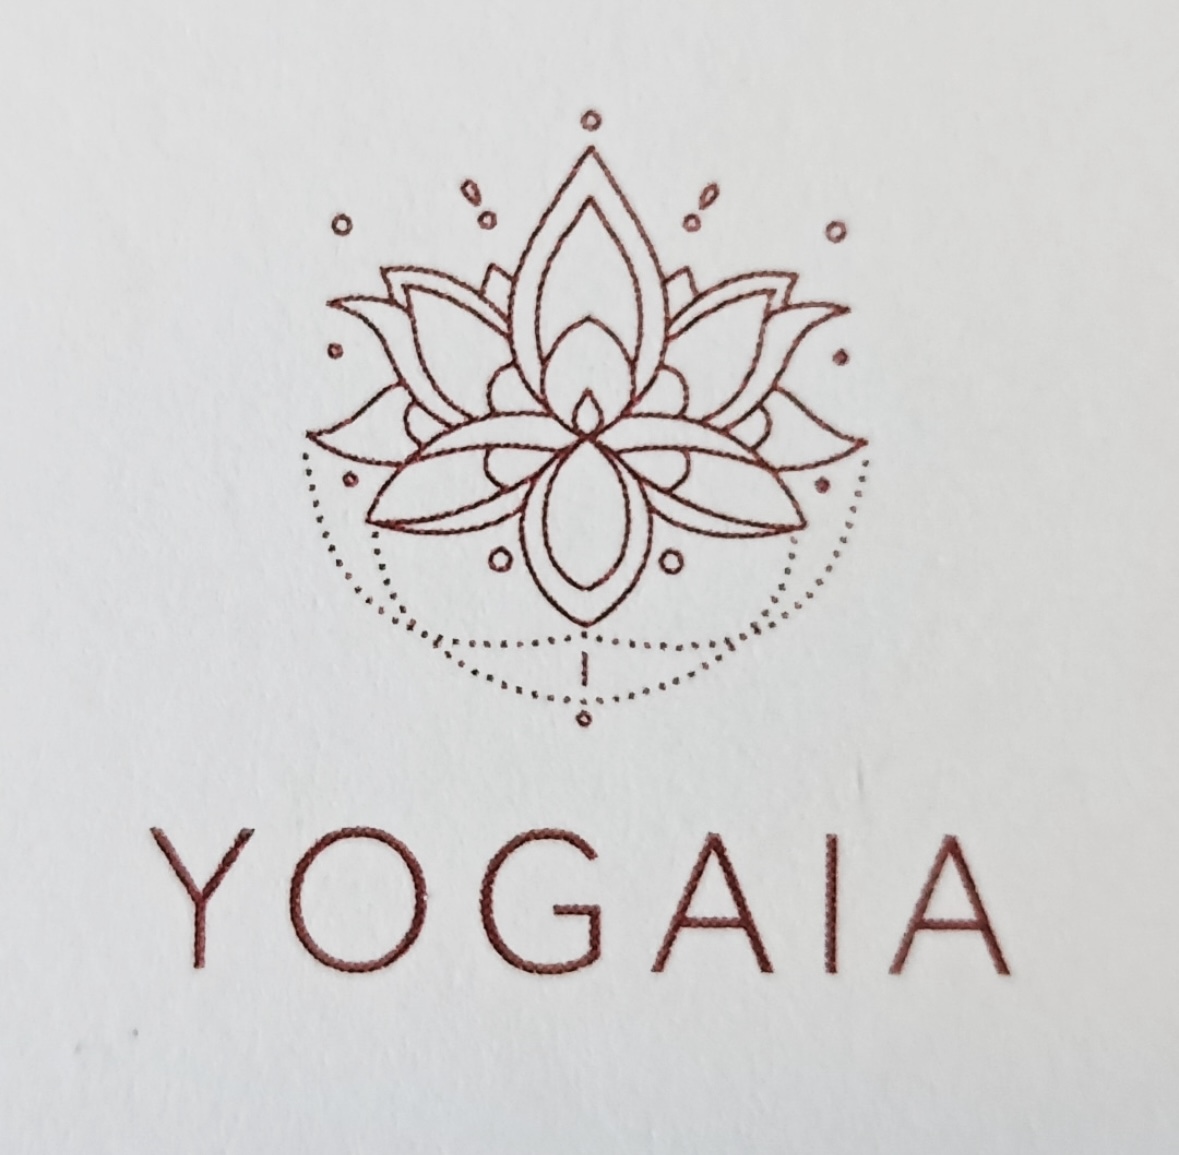 Bild von einer weinroten Lotusblume mit der Unterschrift YOGAIA auf einem grauen Hintergrund.